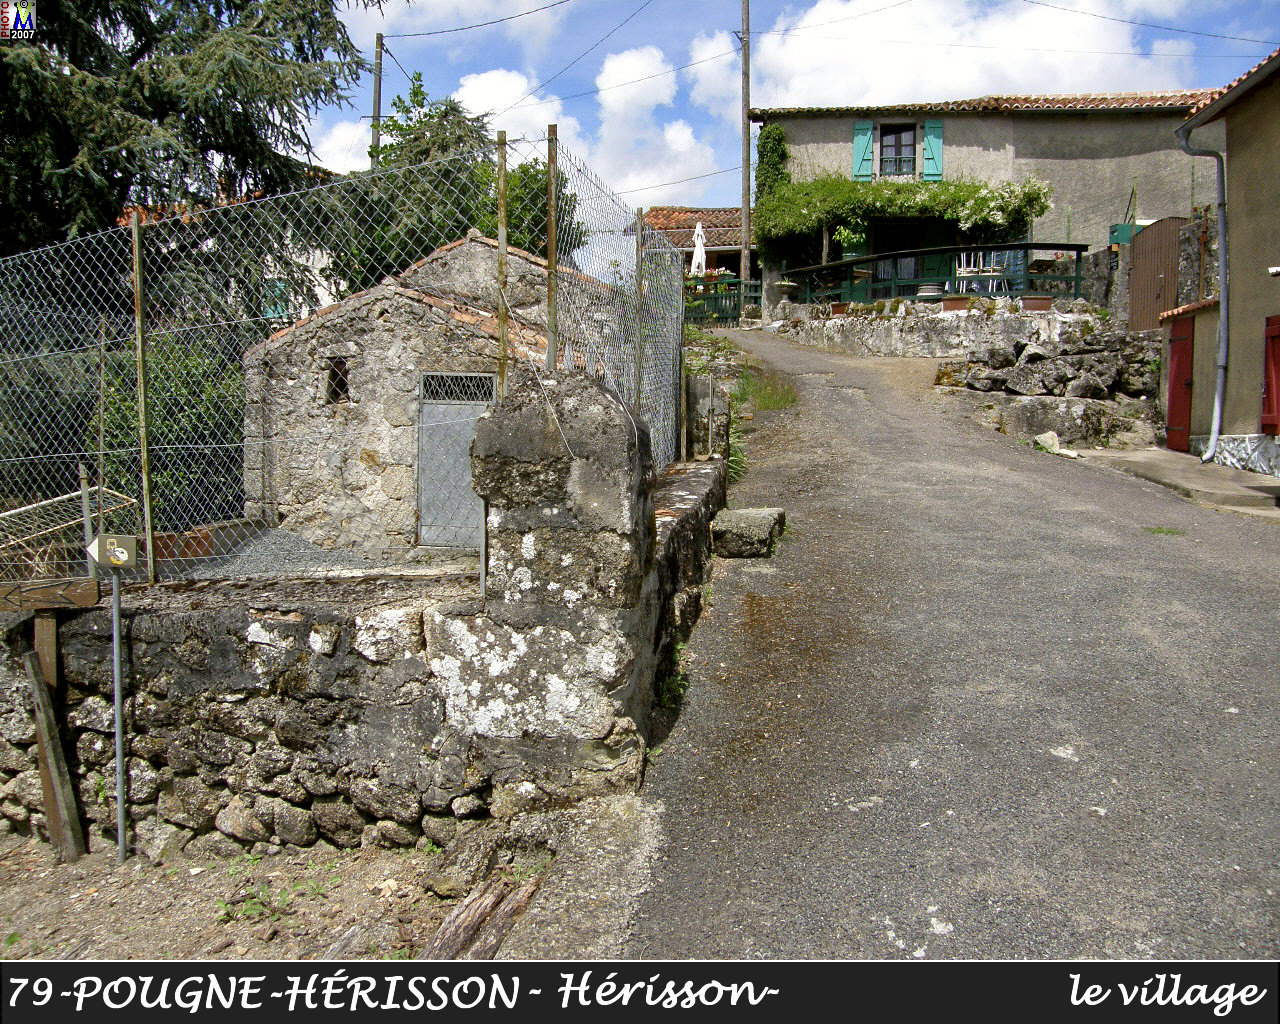 79POUGNE-HERISSON_herisson_village_126.jpg